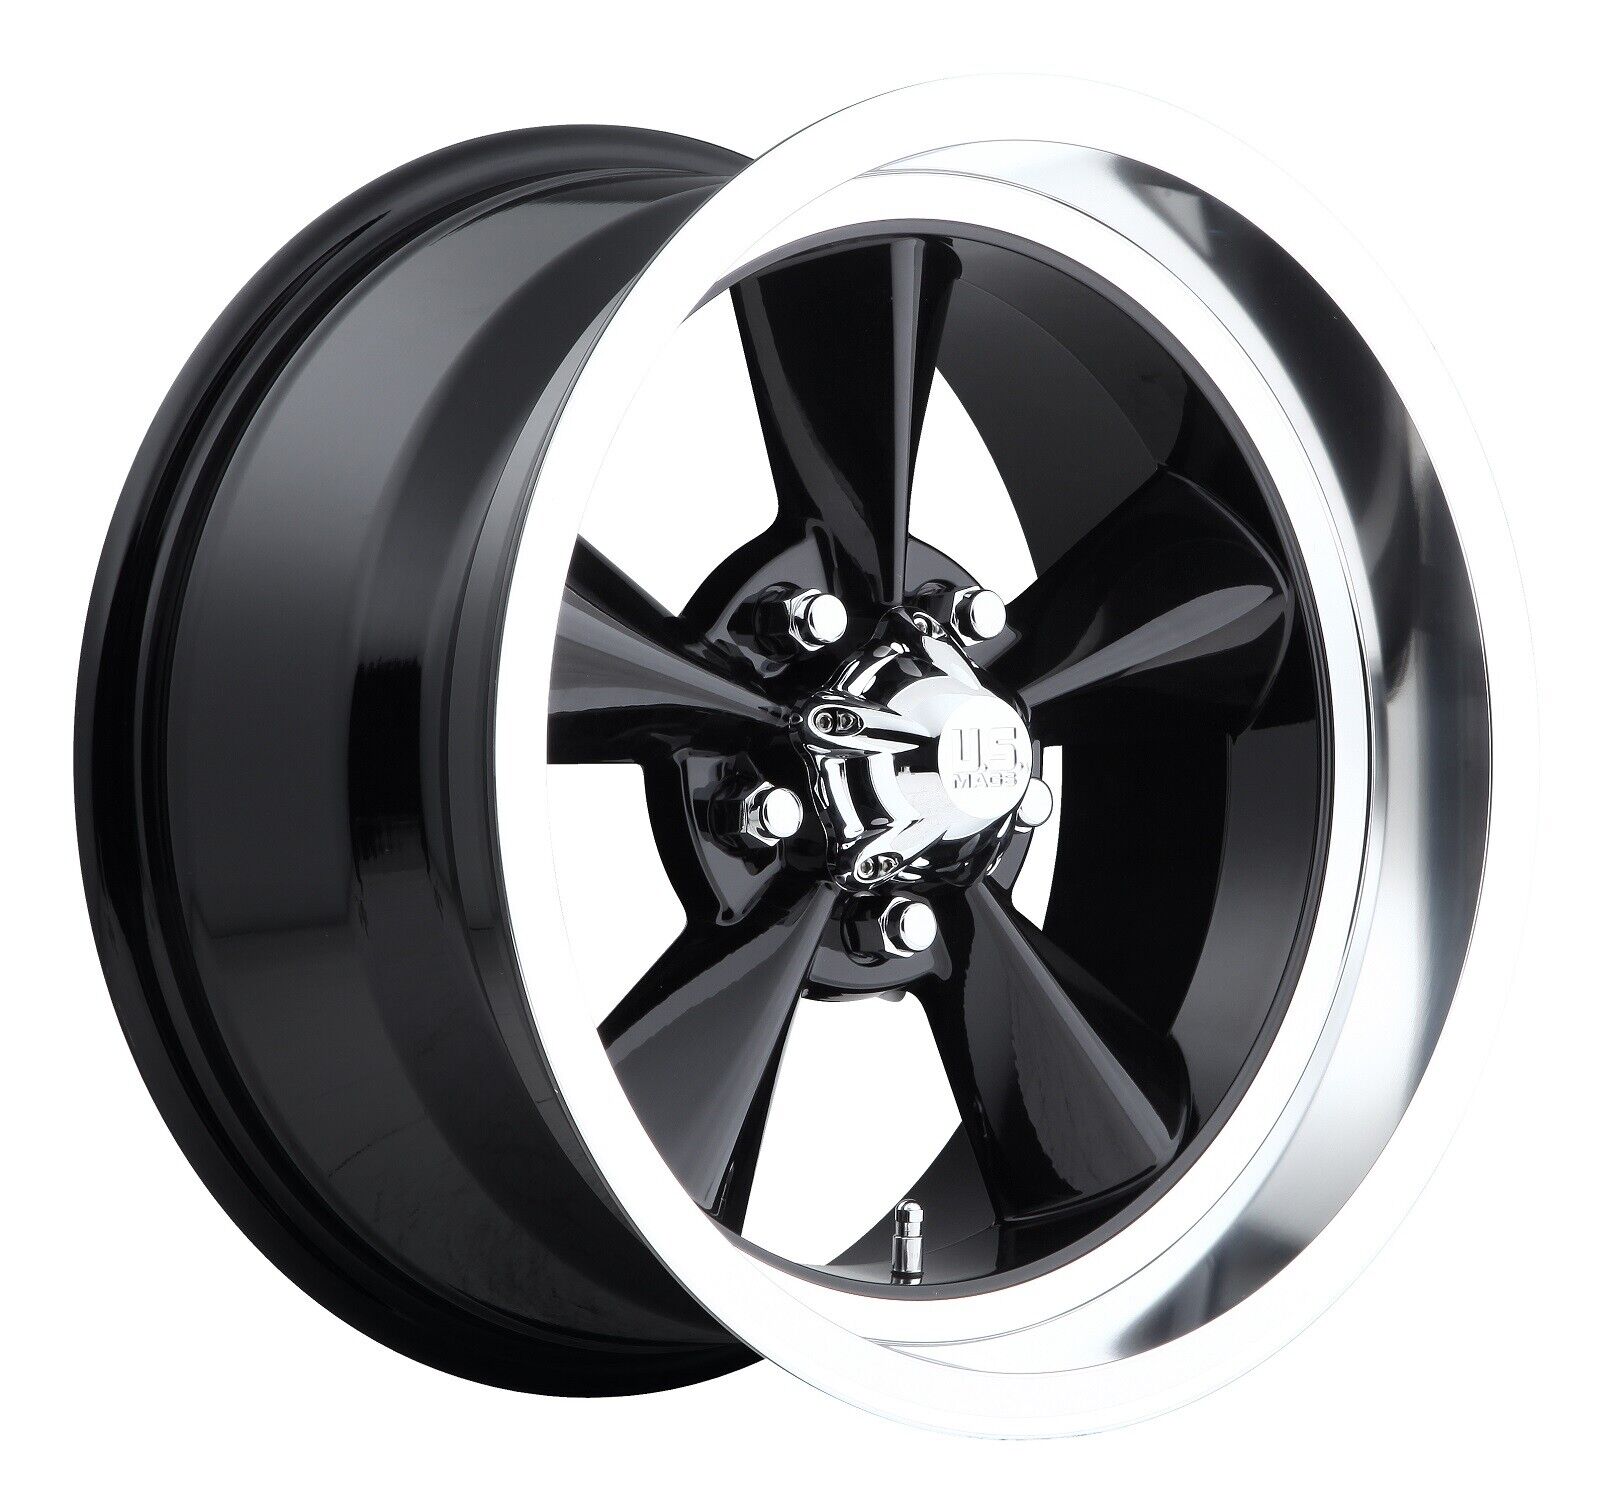 CPP US Mags U107 Standard wheels 17x8 fits: OLDSMOBILE CUTLASS 442 F85